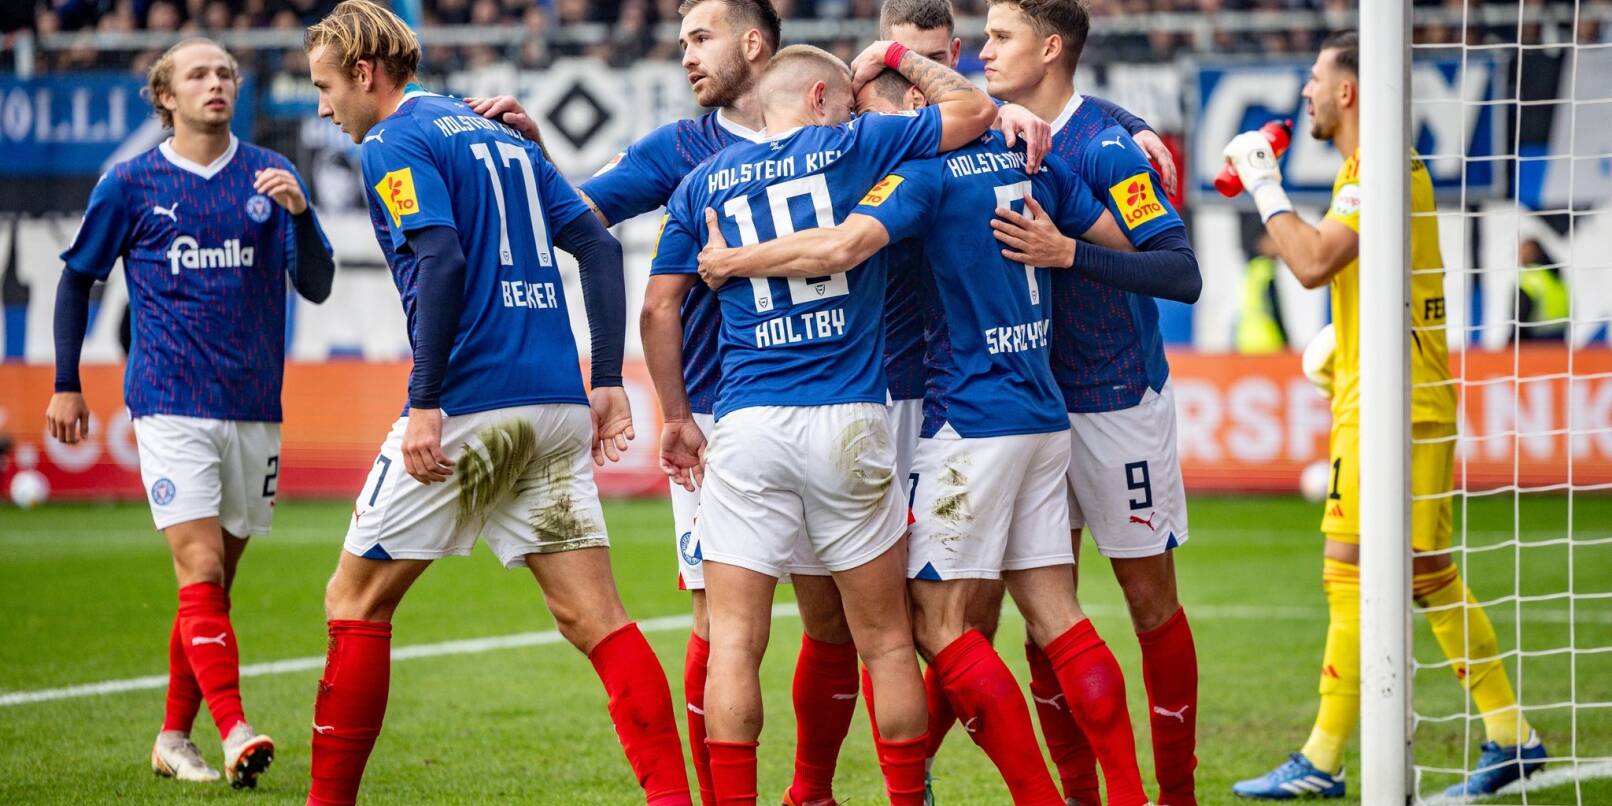 Nordderby: Kiel holte sich im Aufstiegskampf einen wichtigen Sieg gegen den HSV.